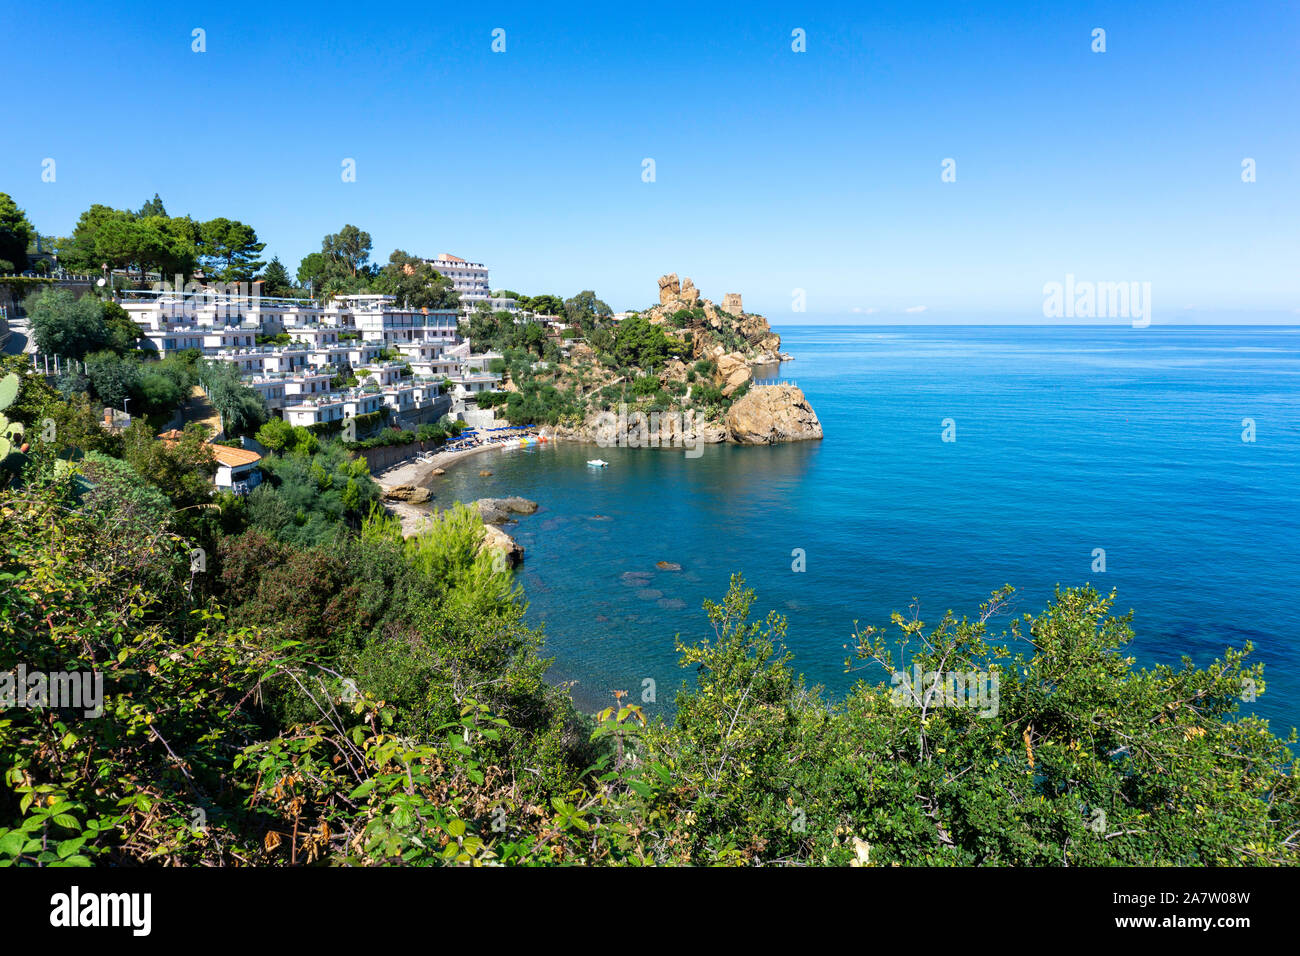 Les eaux bleu clair de la Méditerranée autour de la côte de Cefalú,la Sicile, en Italie, avec l'Hotel Le Calette sur la gauche. Banque D'Images